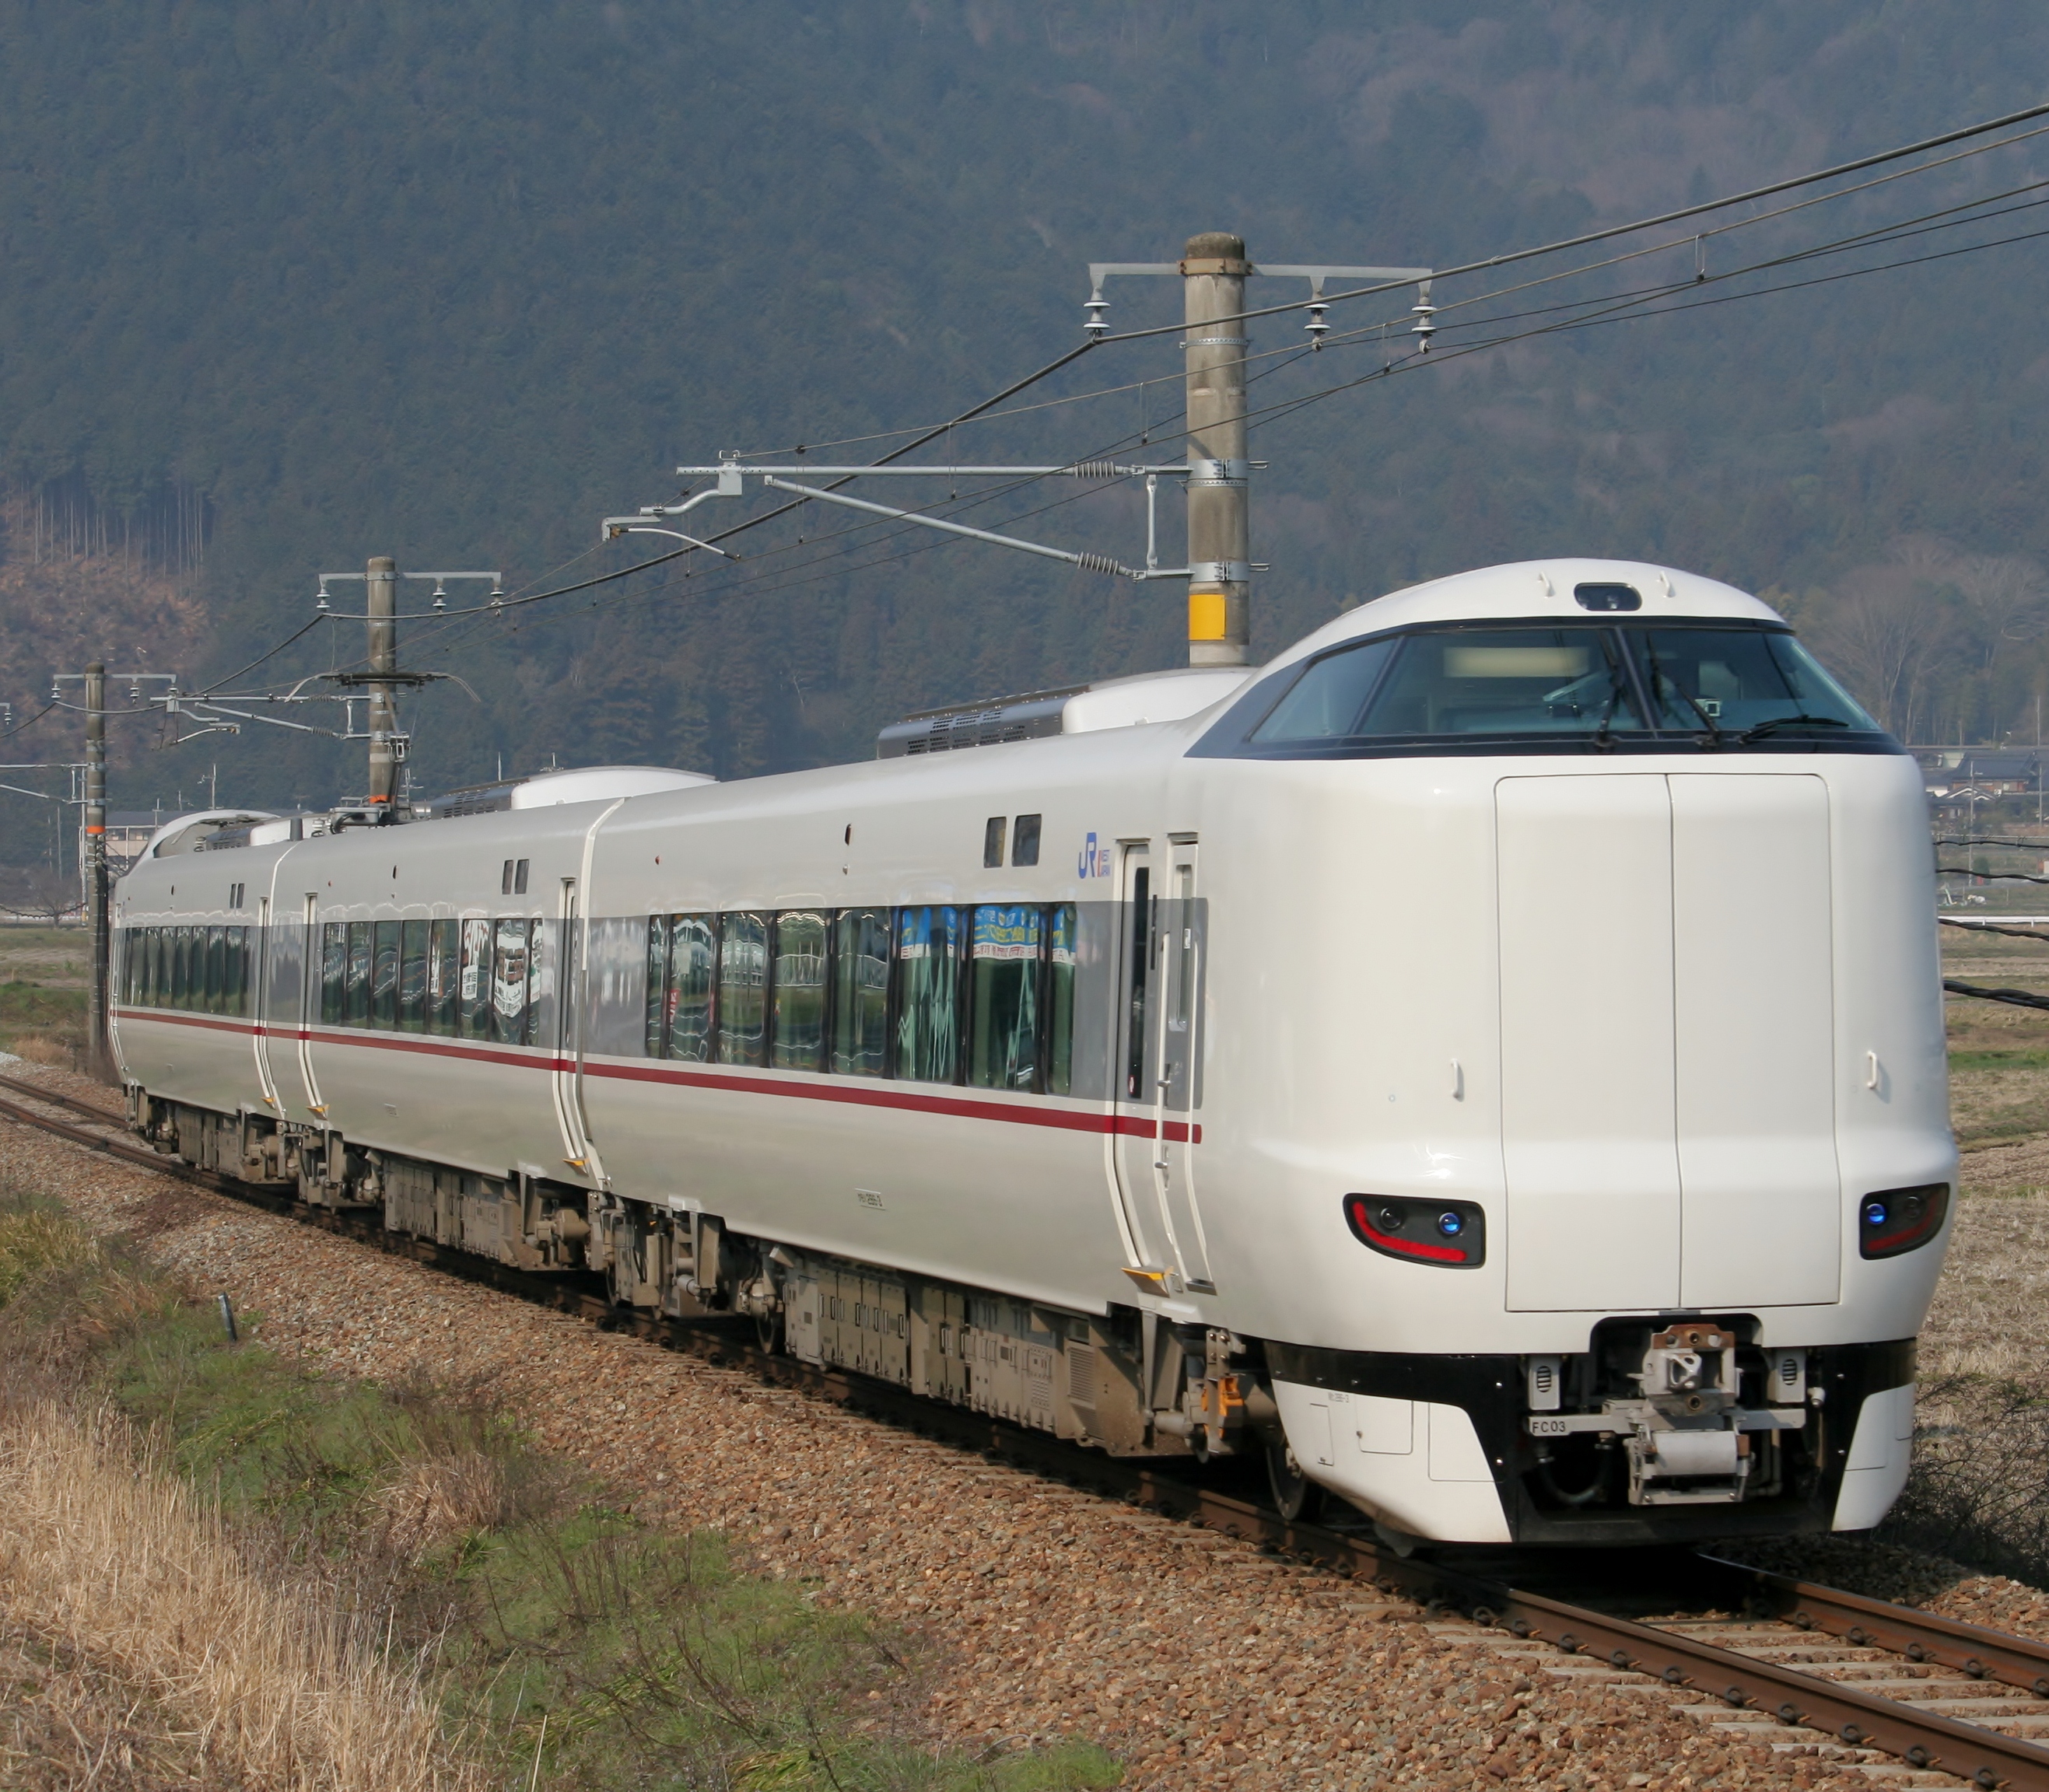 城崎温泉有直接到新大阪站的城崎号(きのさき / kinosaki)特快列车